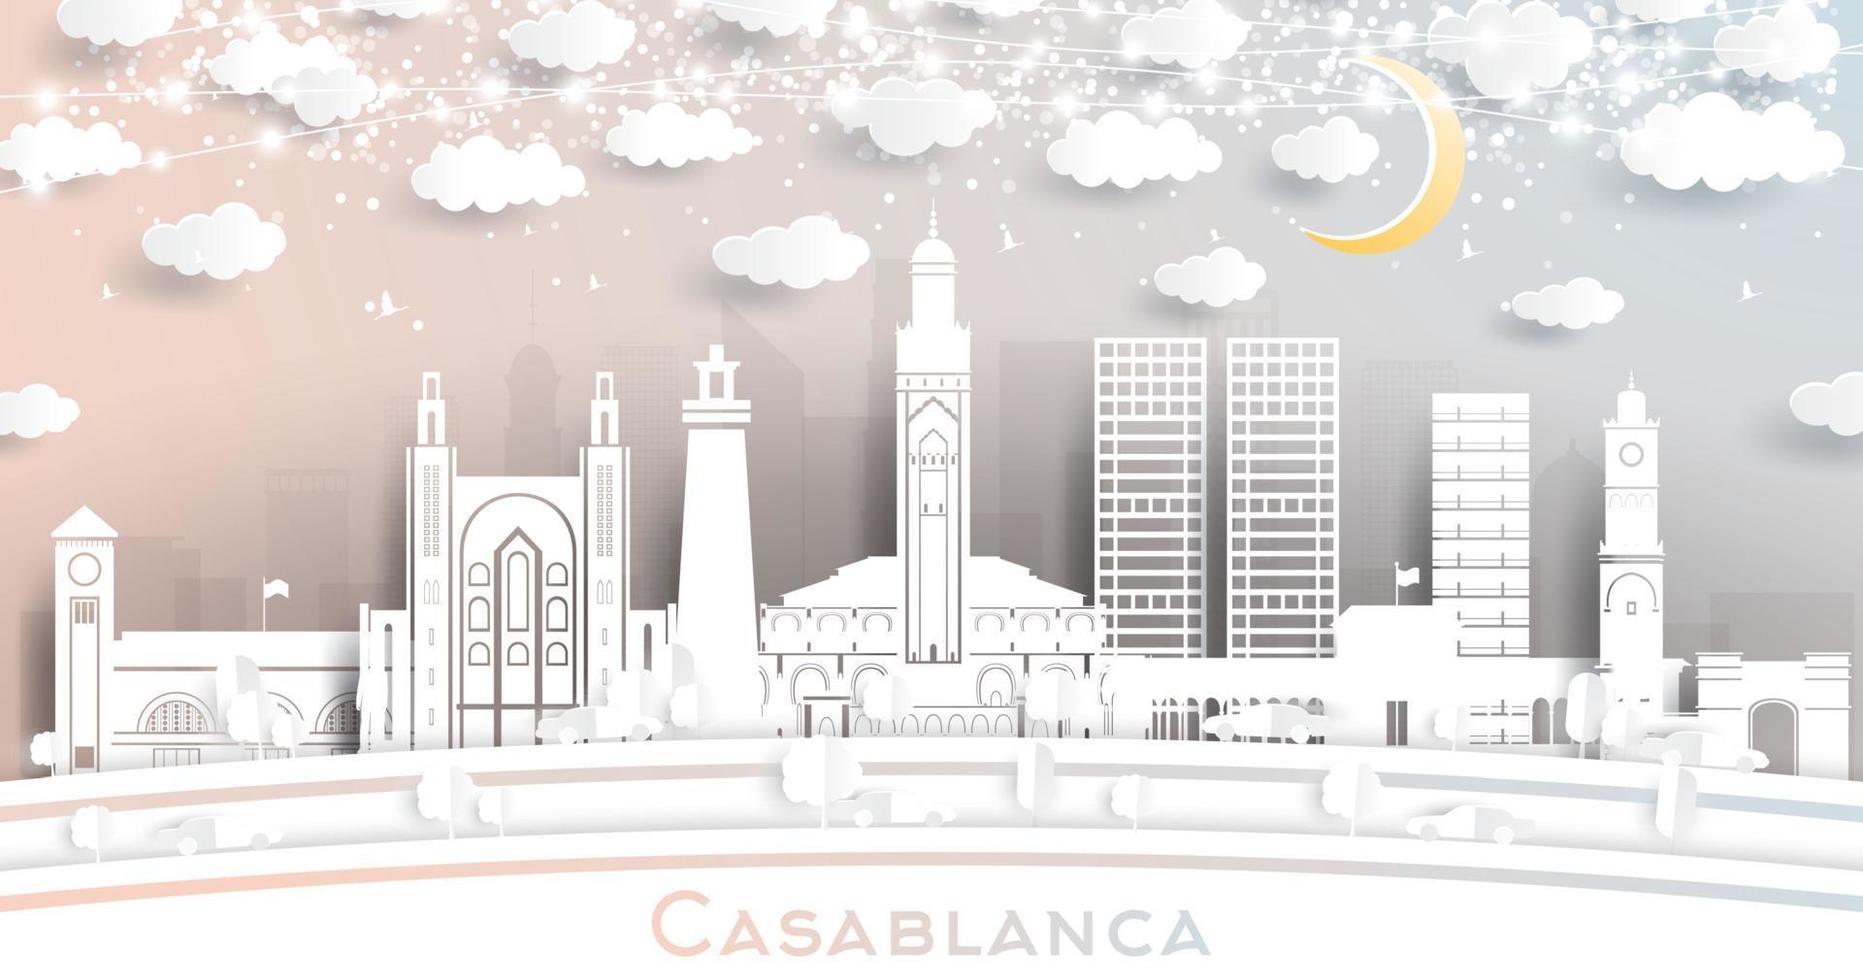 el horizonte de la ciudad de casablanca marruecos en estilo de corte de papel con edificios blancos, luna y guirnalda de neón. vector